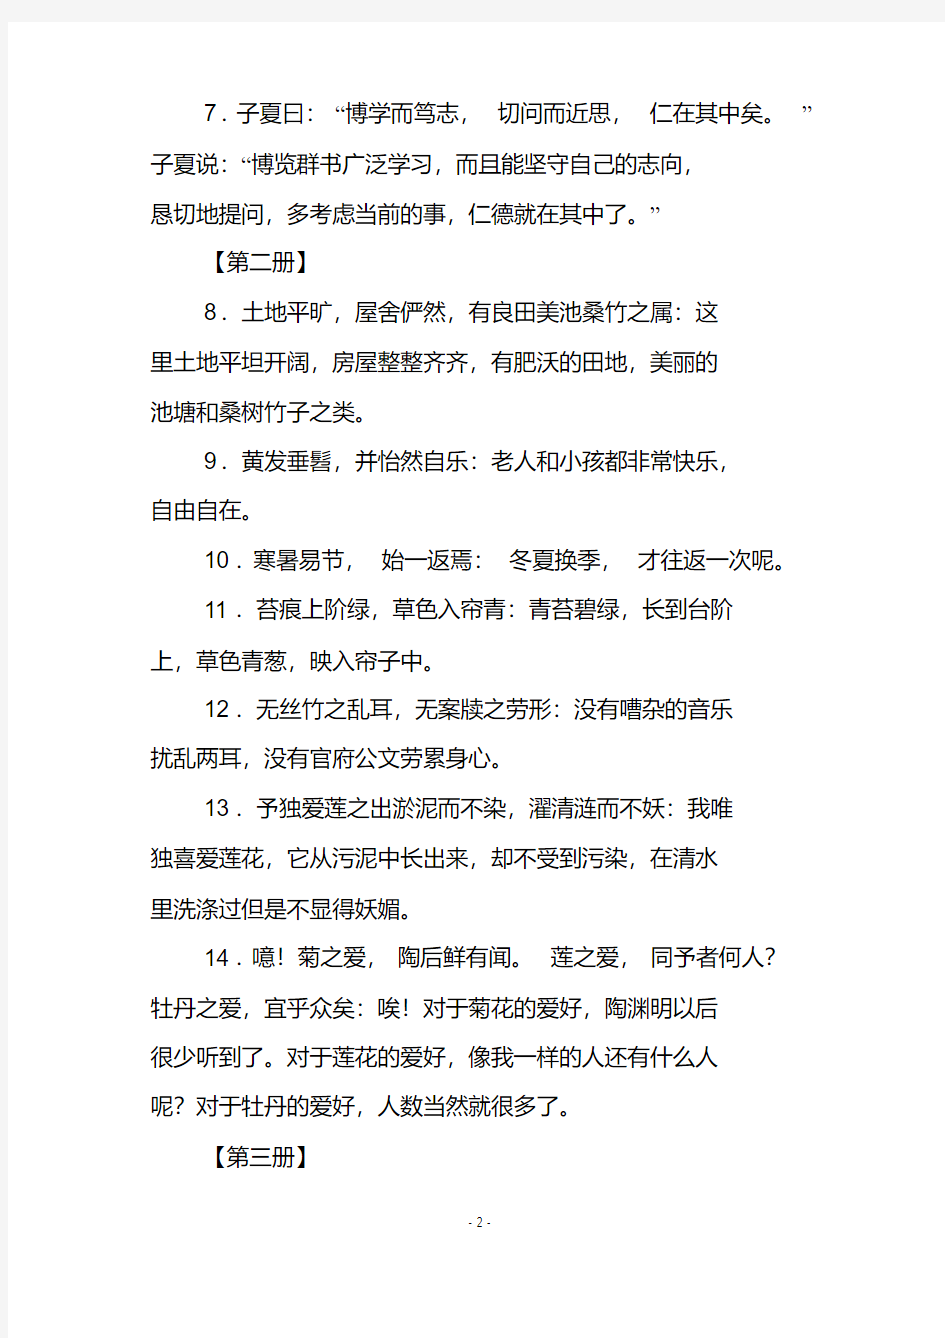 初中语文三年课本中文言文重要语句的翻译